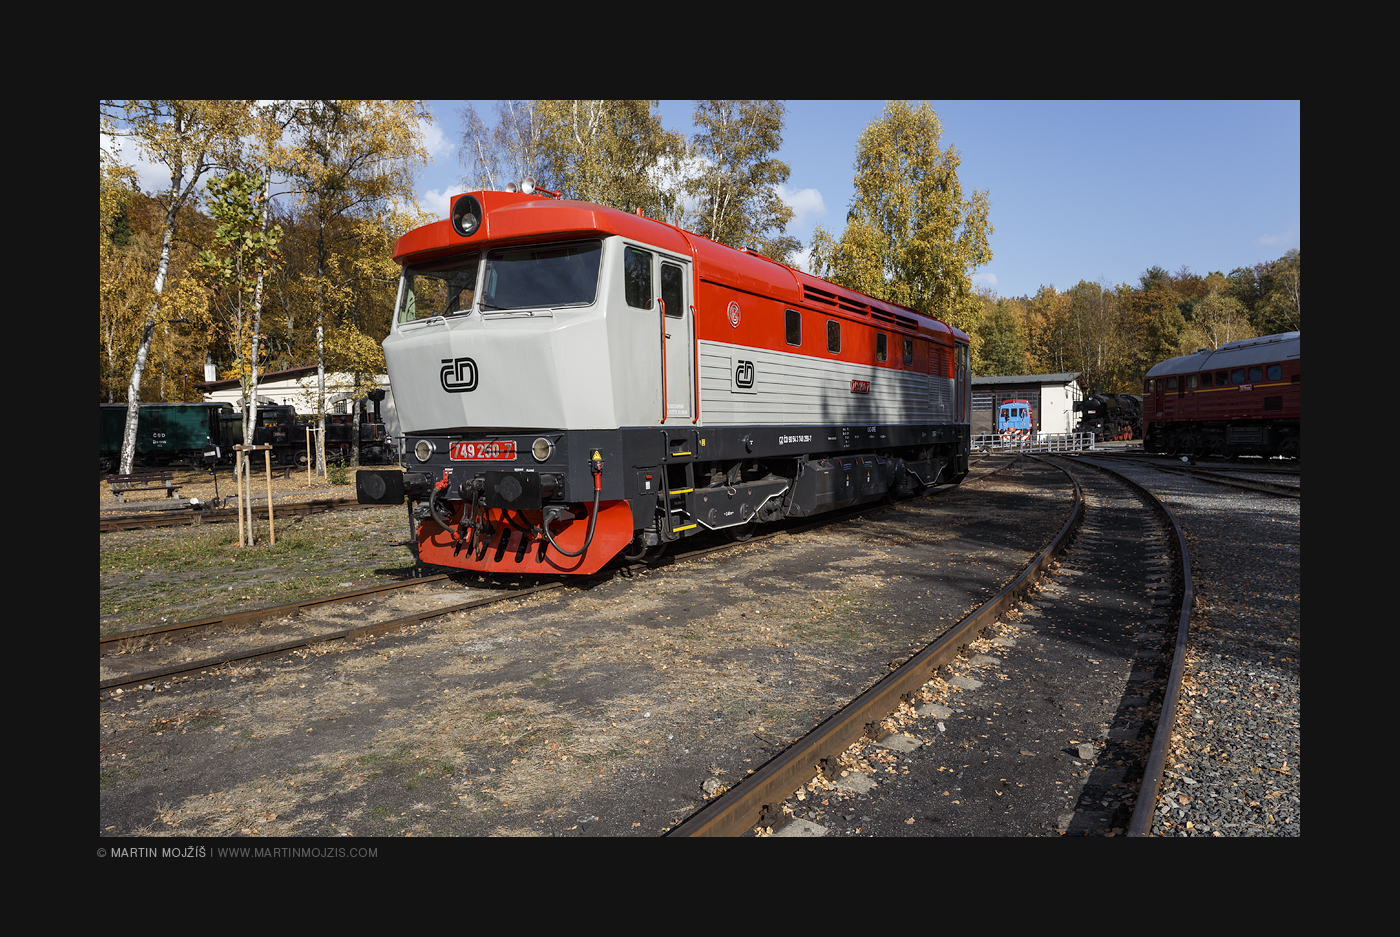 Diesel locomotive 749.250-7.